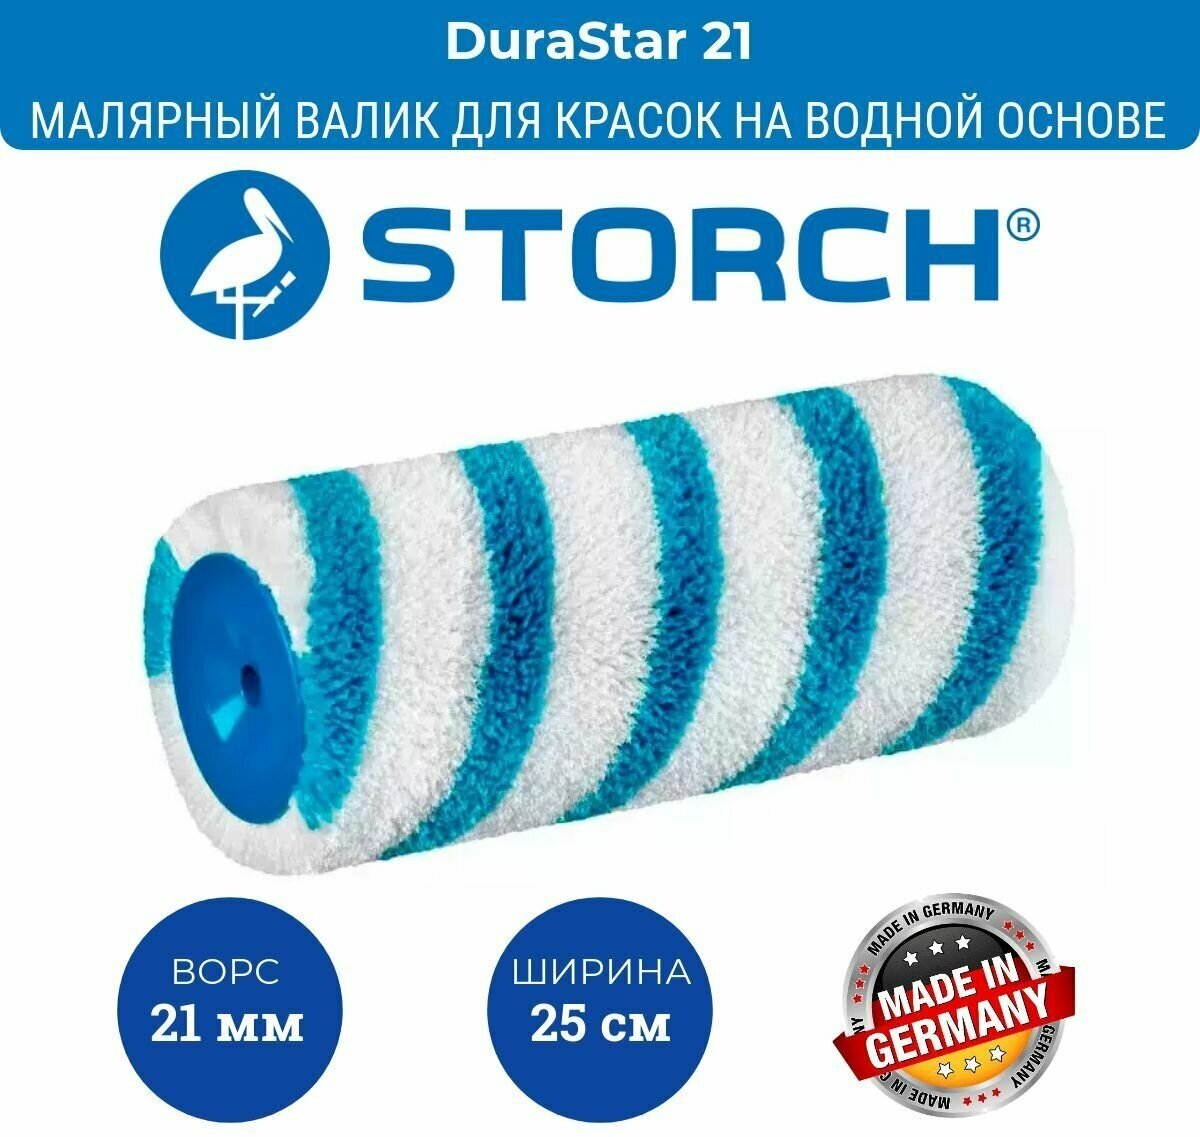 Полиамидный особо прочный валк малярный Storch Premium DuraStar валик для шпатлевки ворс 21мм валик для краски